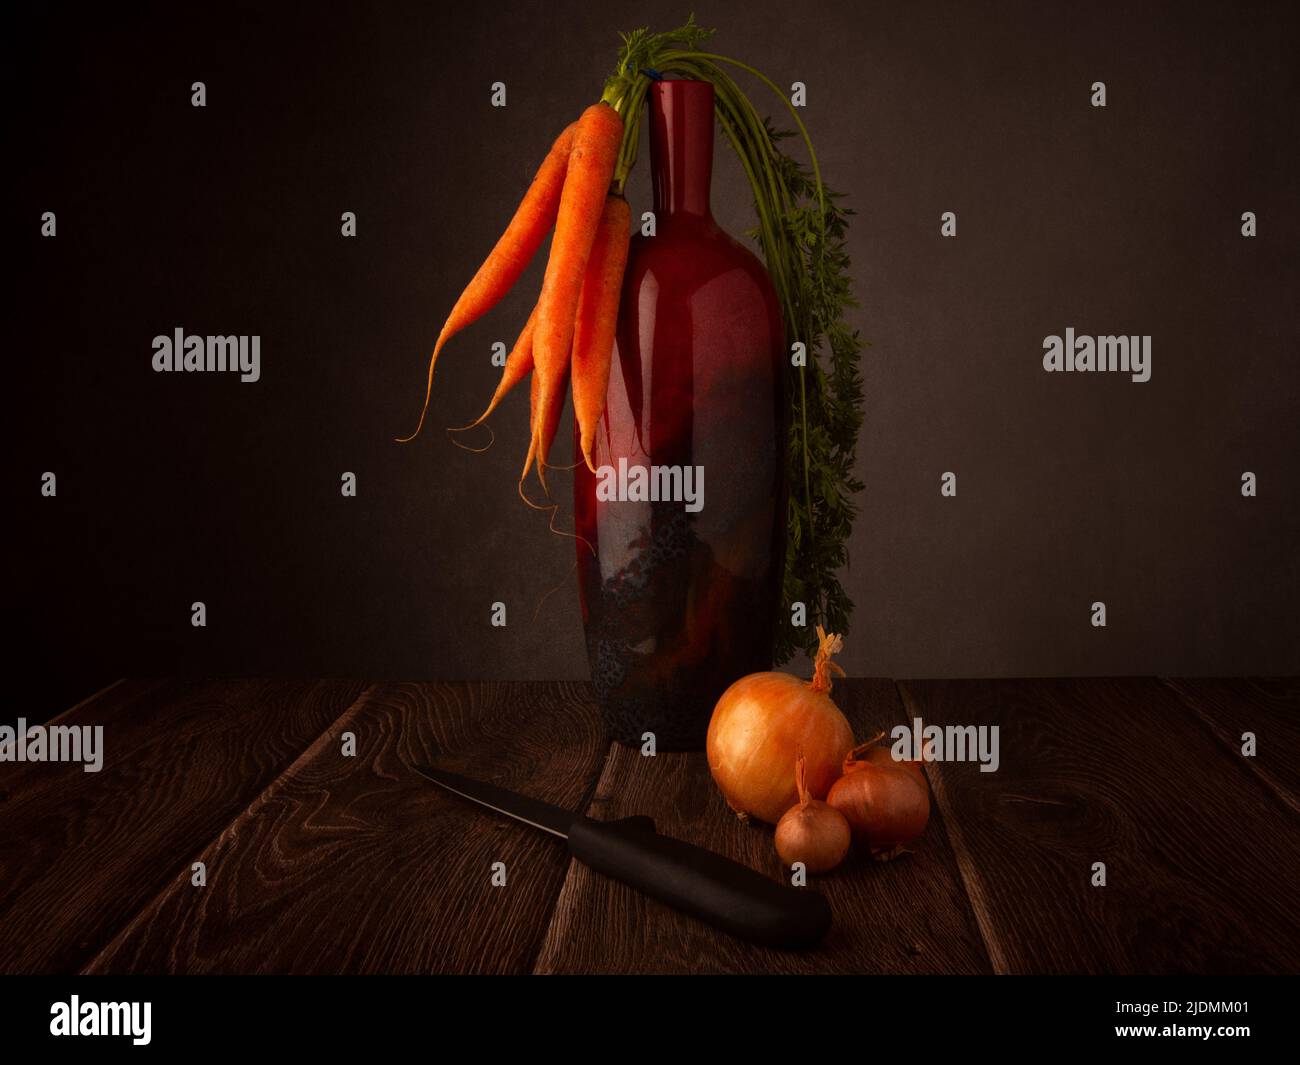 La vie encore de carottes biologiques reposant sur un vase, des oignons et un couteau sur une table en bois sombre avec un arrière-plan sombre Banque D'Images